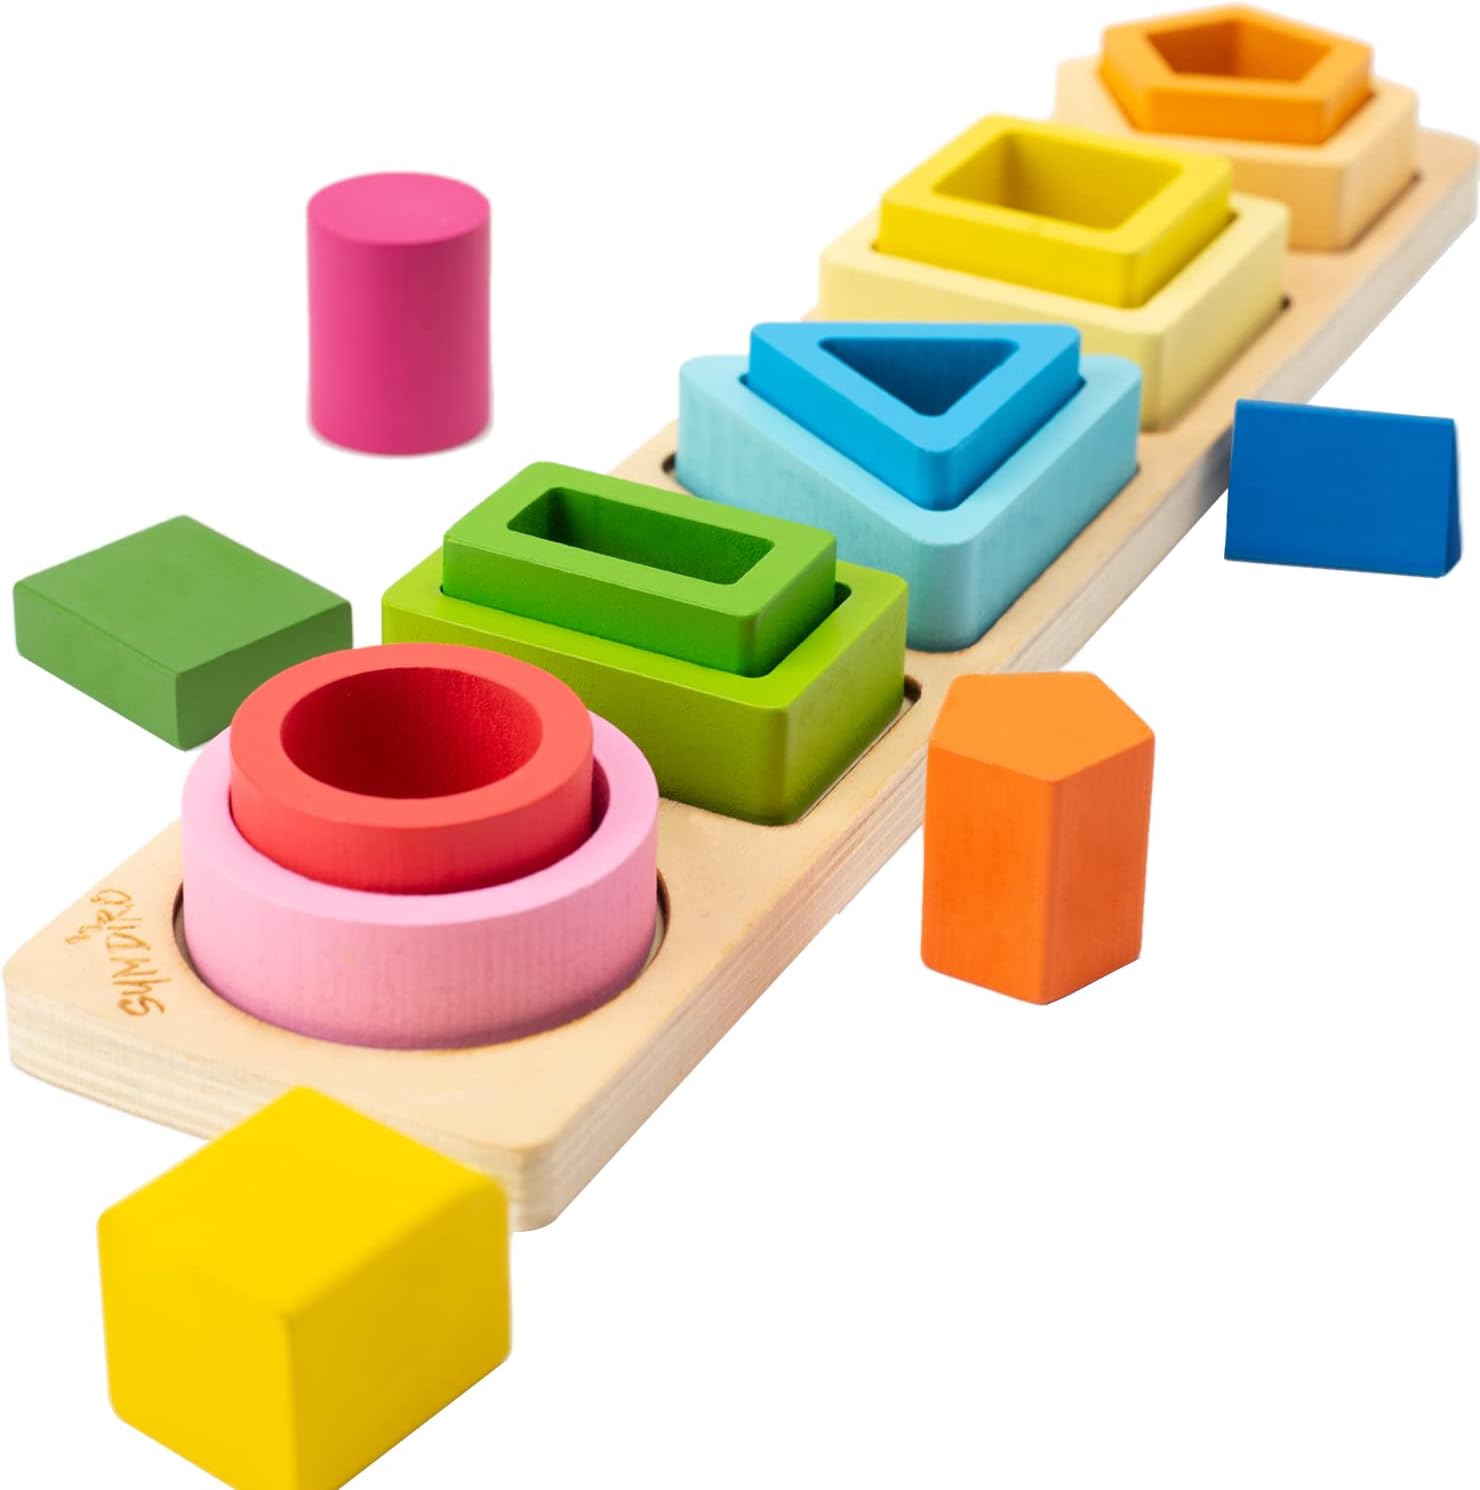 Montessori-style Stacking Toys